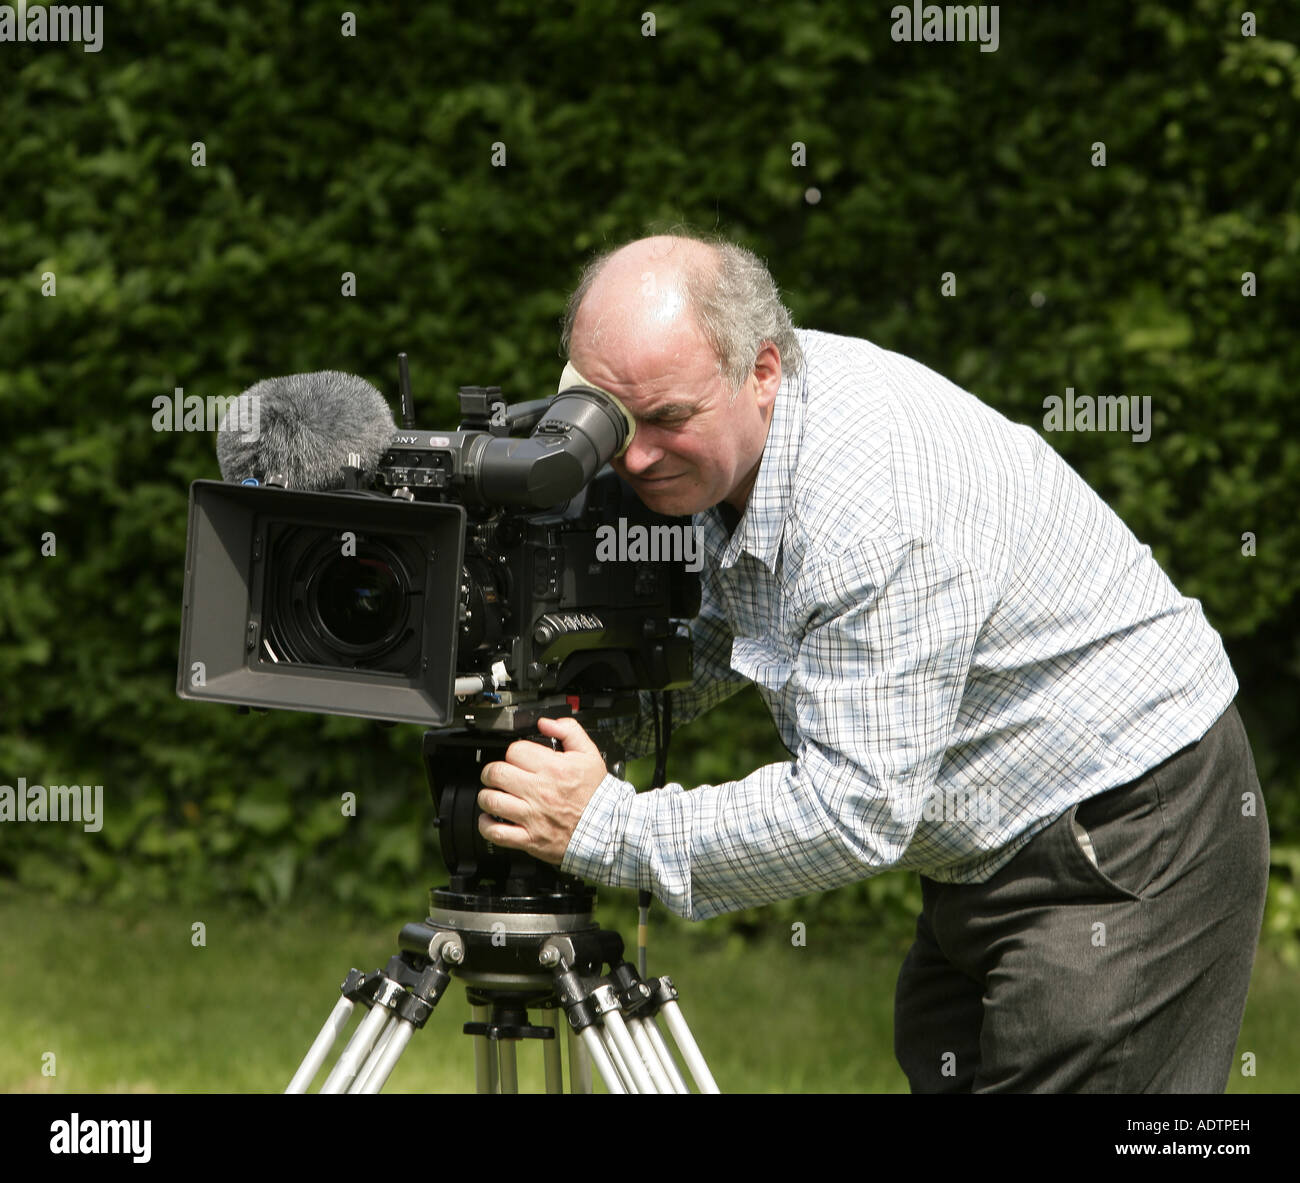 television cameraman at work Stock Photo